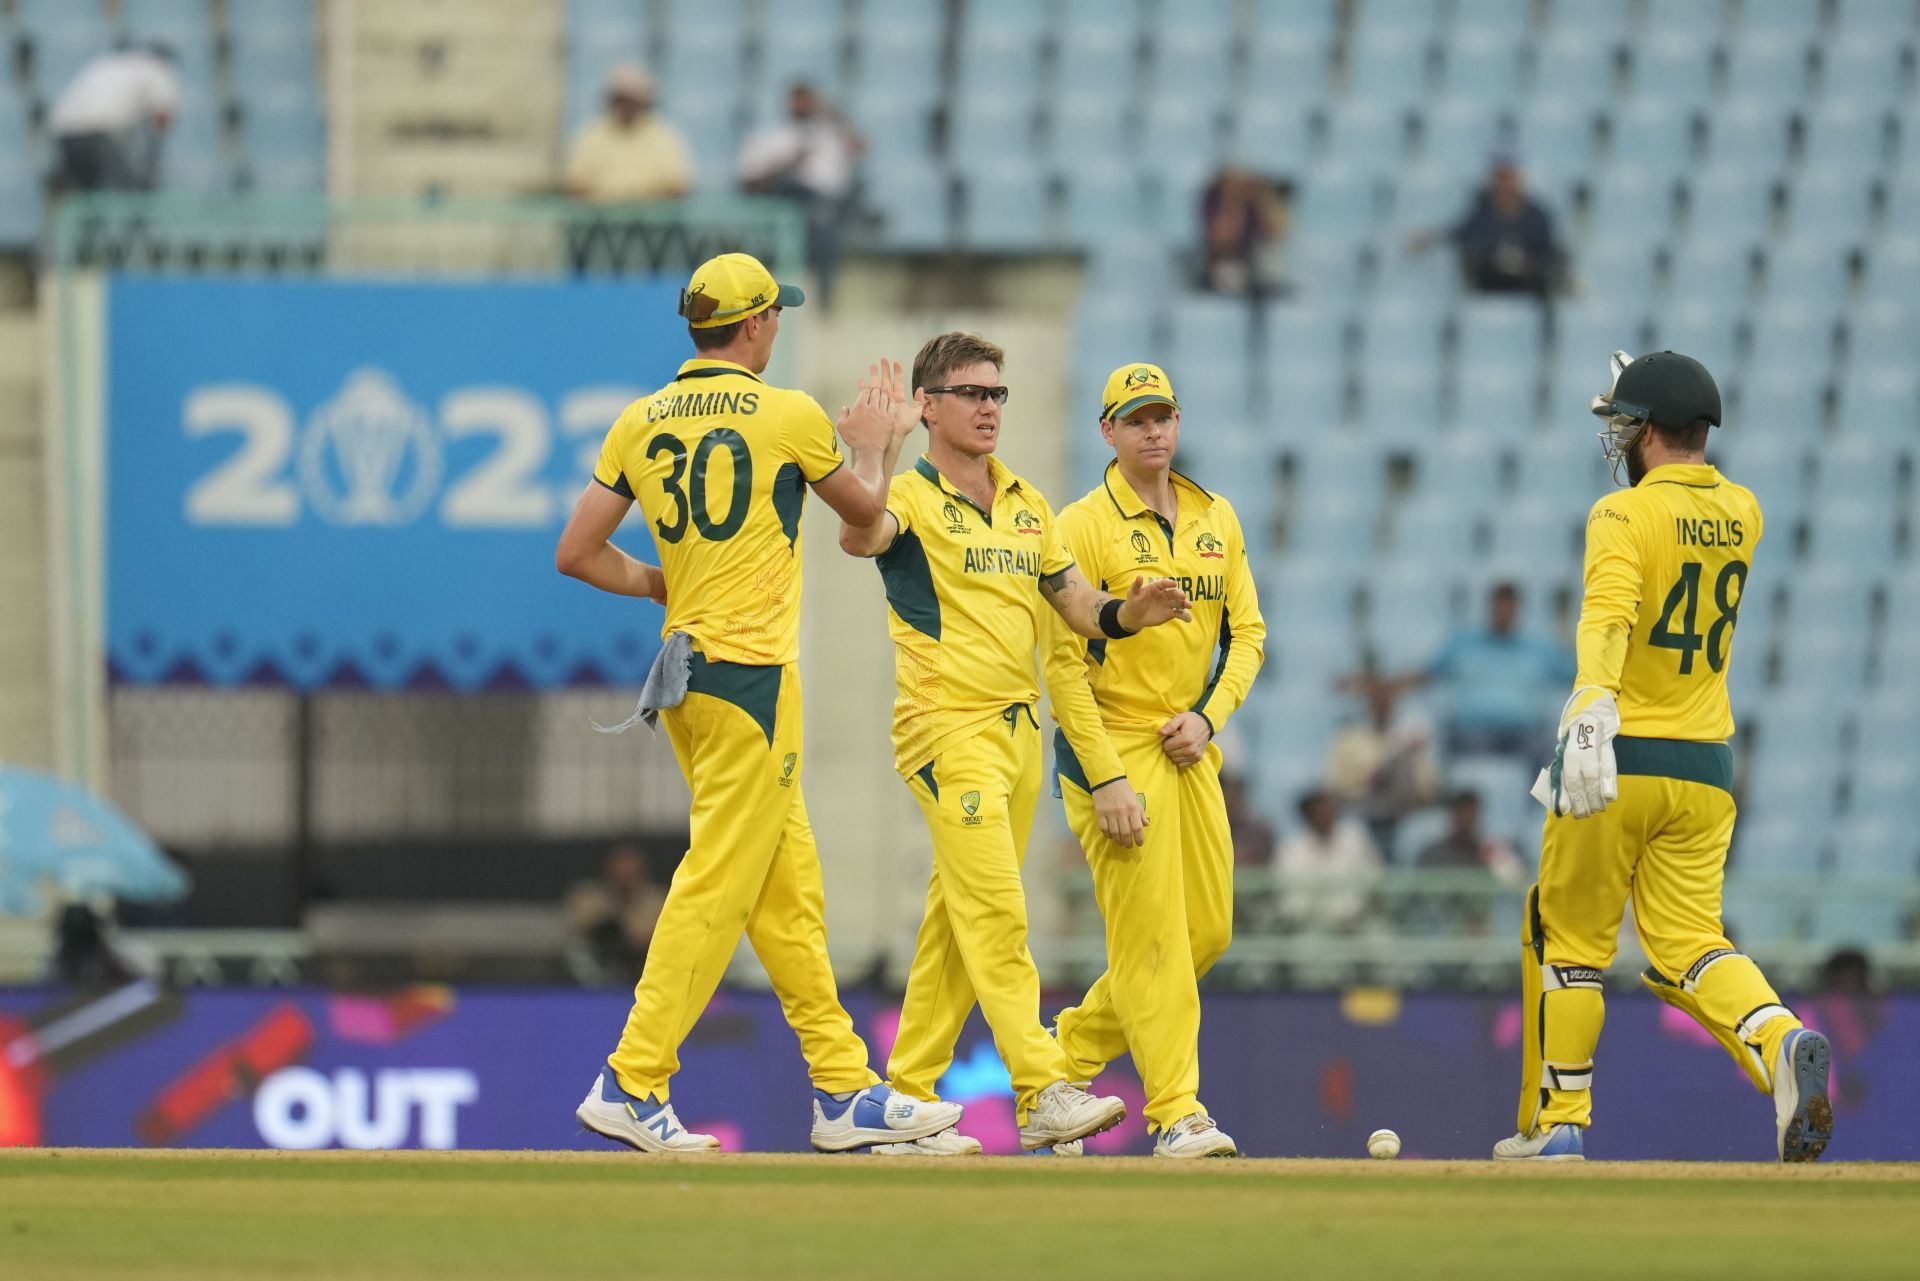 Australia registered an easy win in their last game against Sri Lanka. [P/C: AP]